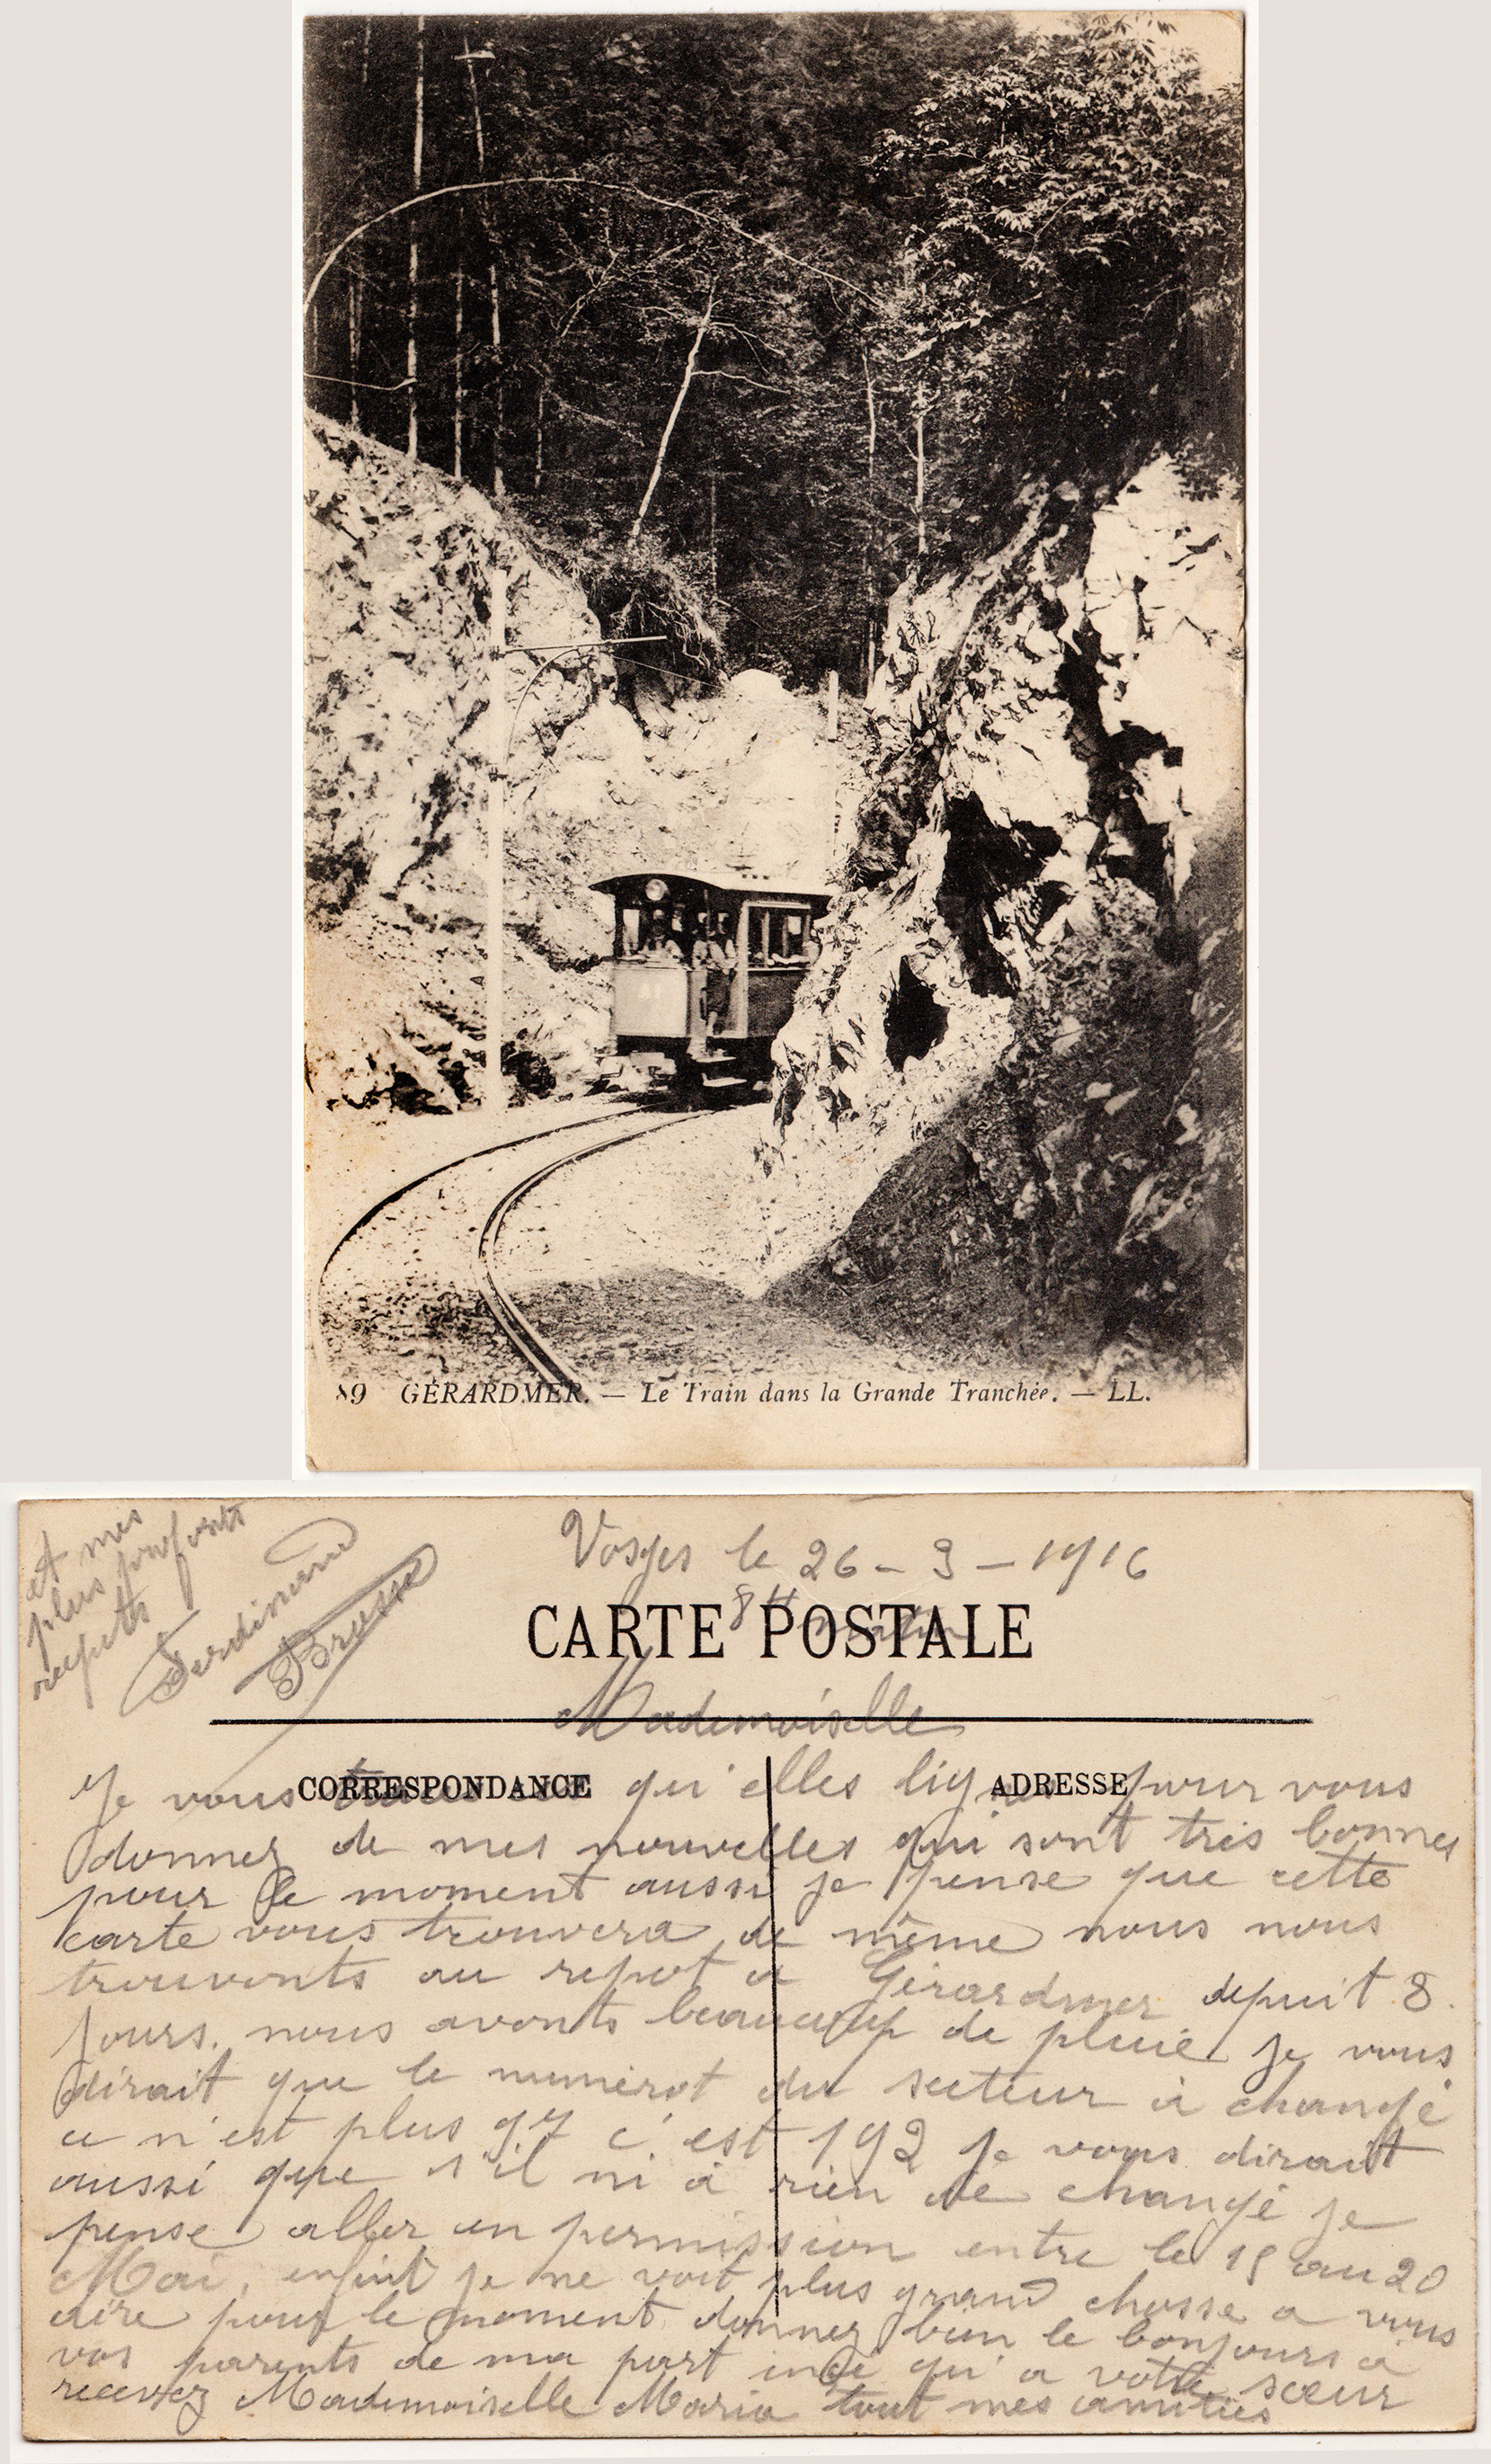 Cartes postales patriotiques françaises de la Grande Guerre - recensement - Page 3 9c3fd80a0f84a6ef9a9ccd9cd1df04e922b76c9e